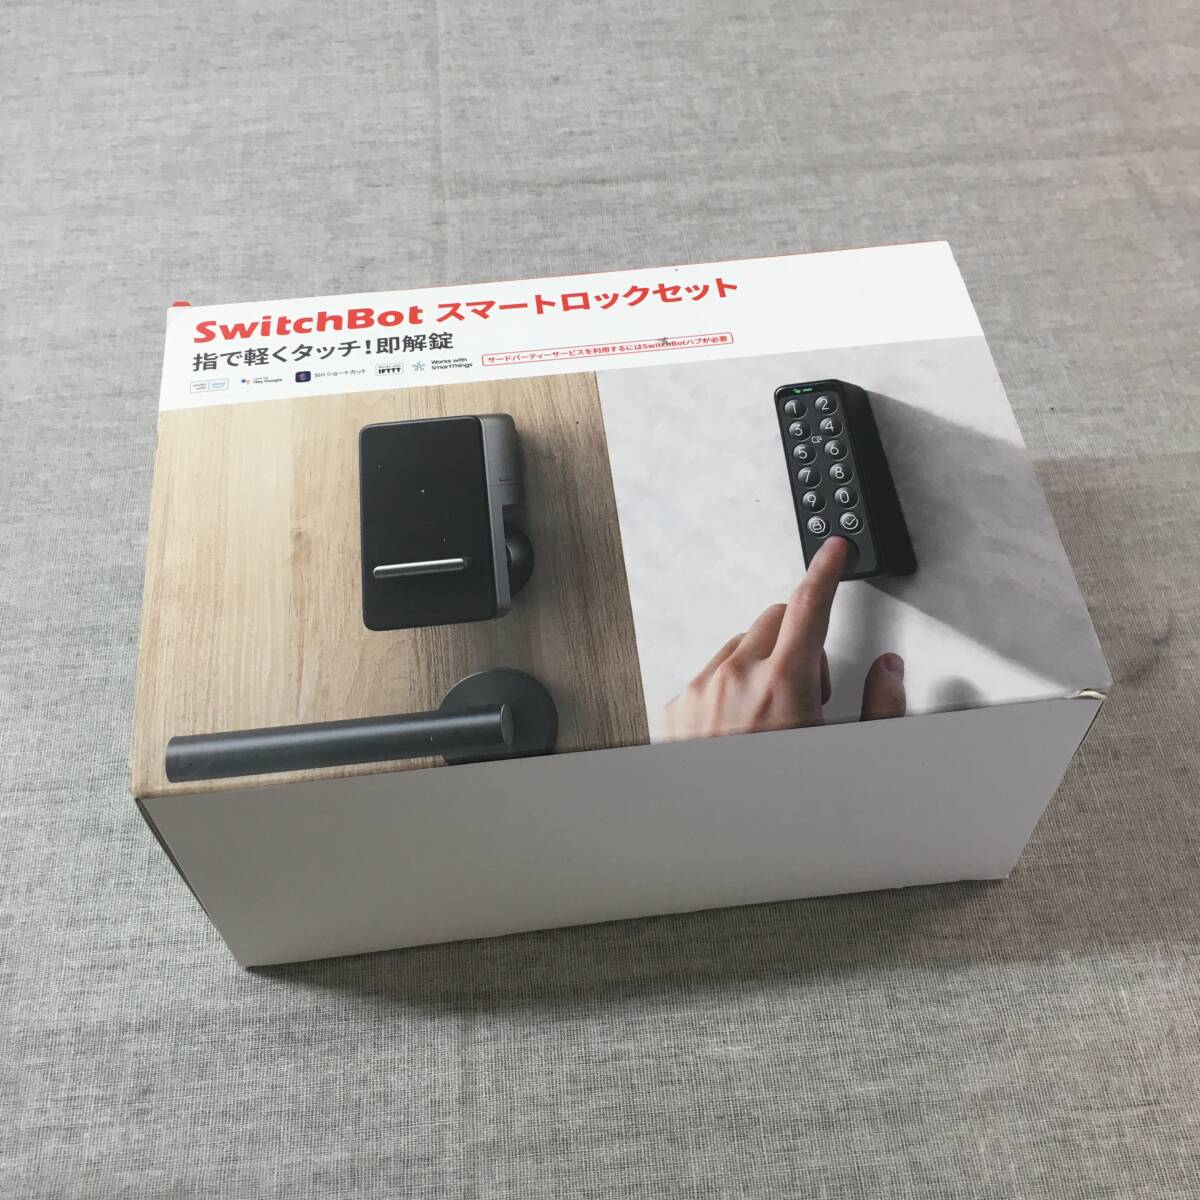 未使用 SwitchBot スマートロック 指紋認証パッド セット Alexa スマートホーム スイッチボット オートロック 暗証番号 玄関 W1601702の画像1